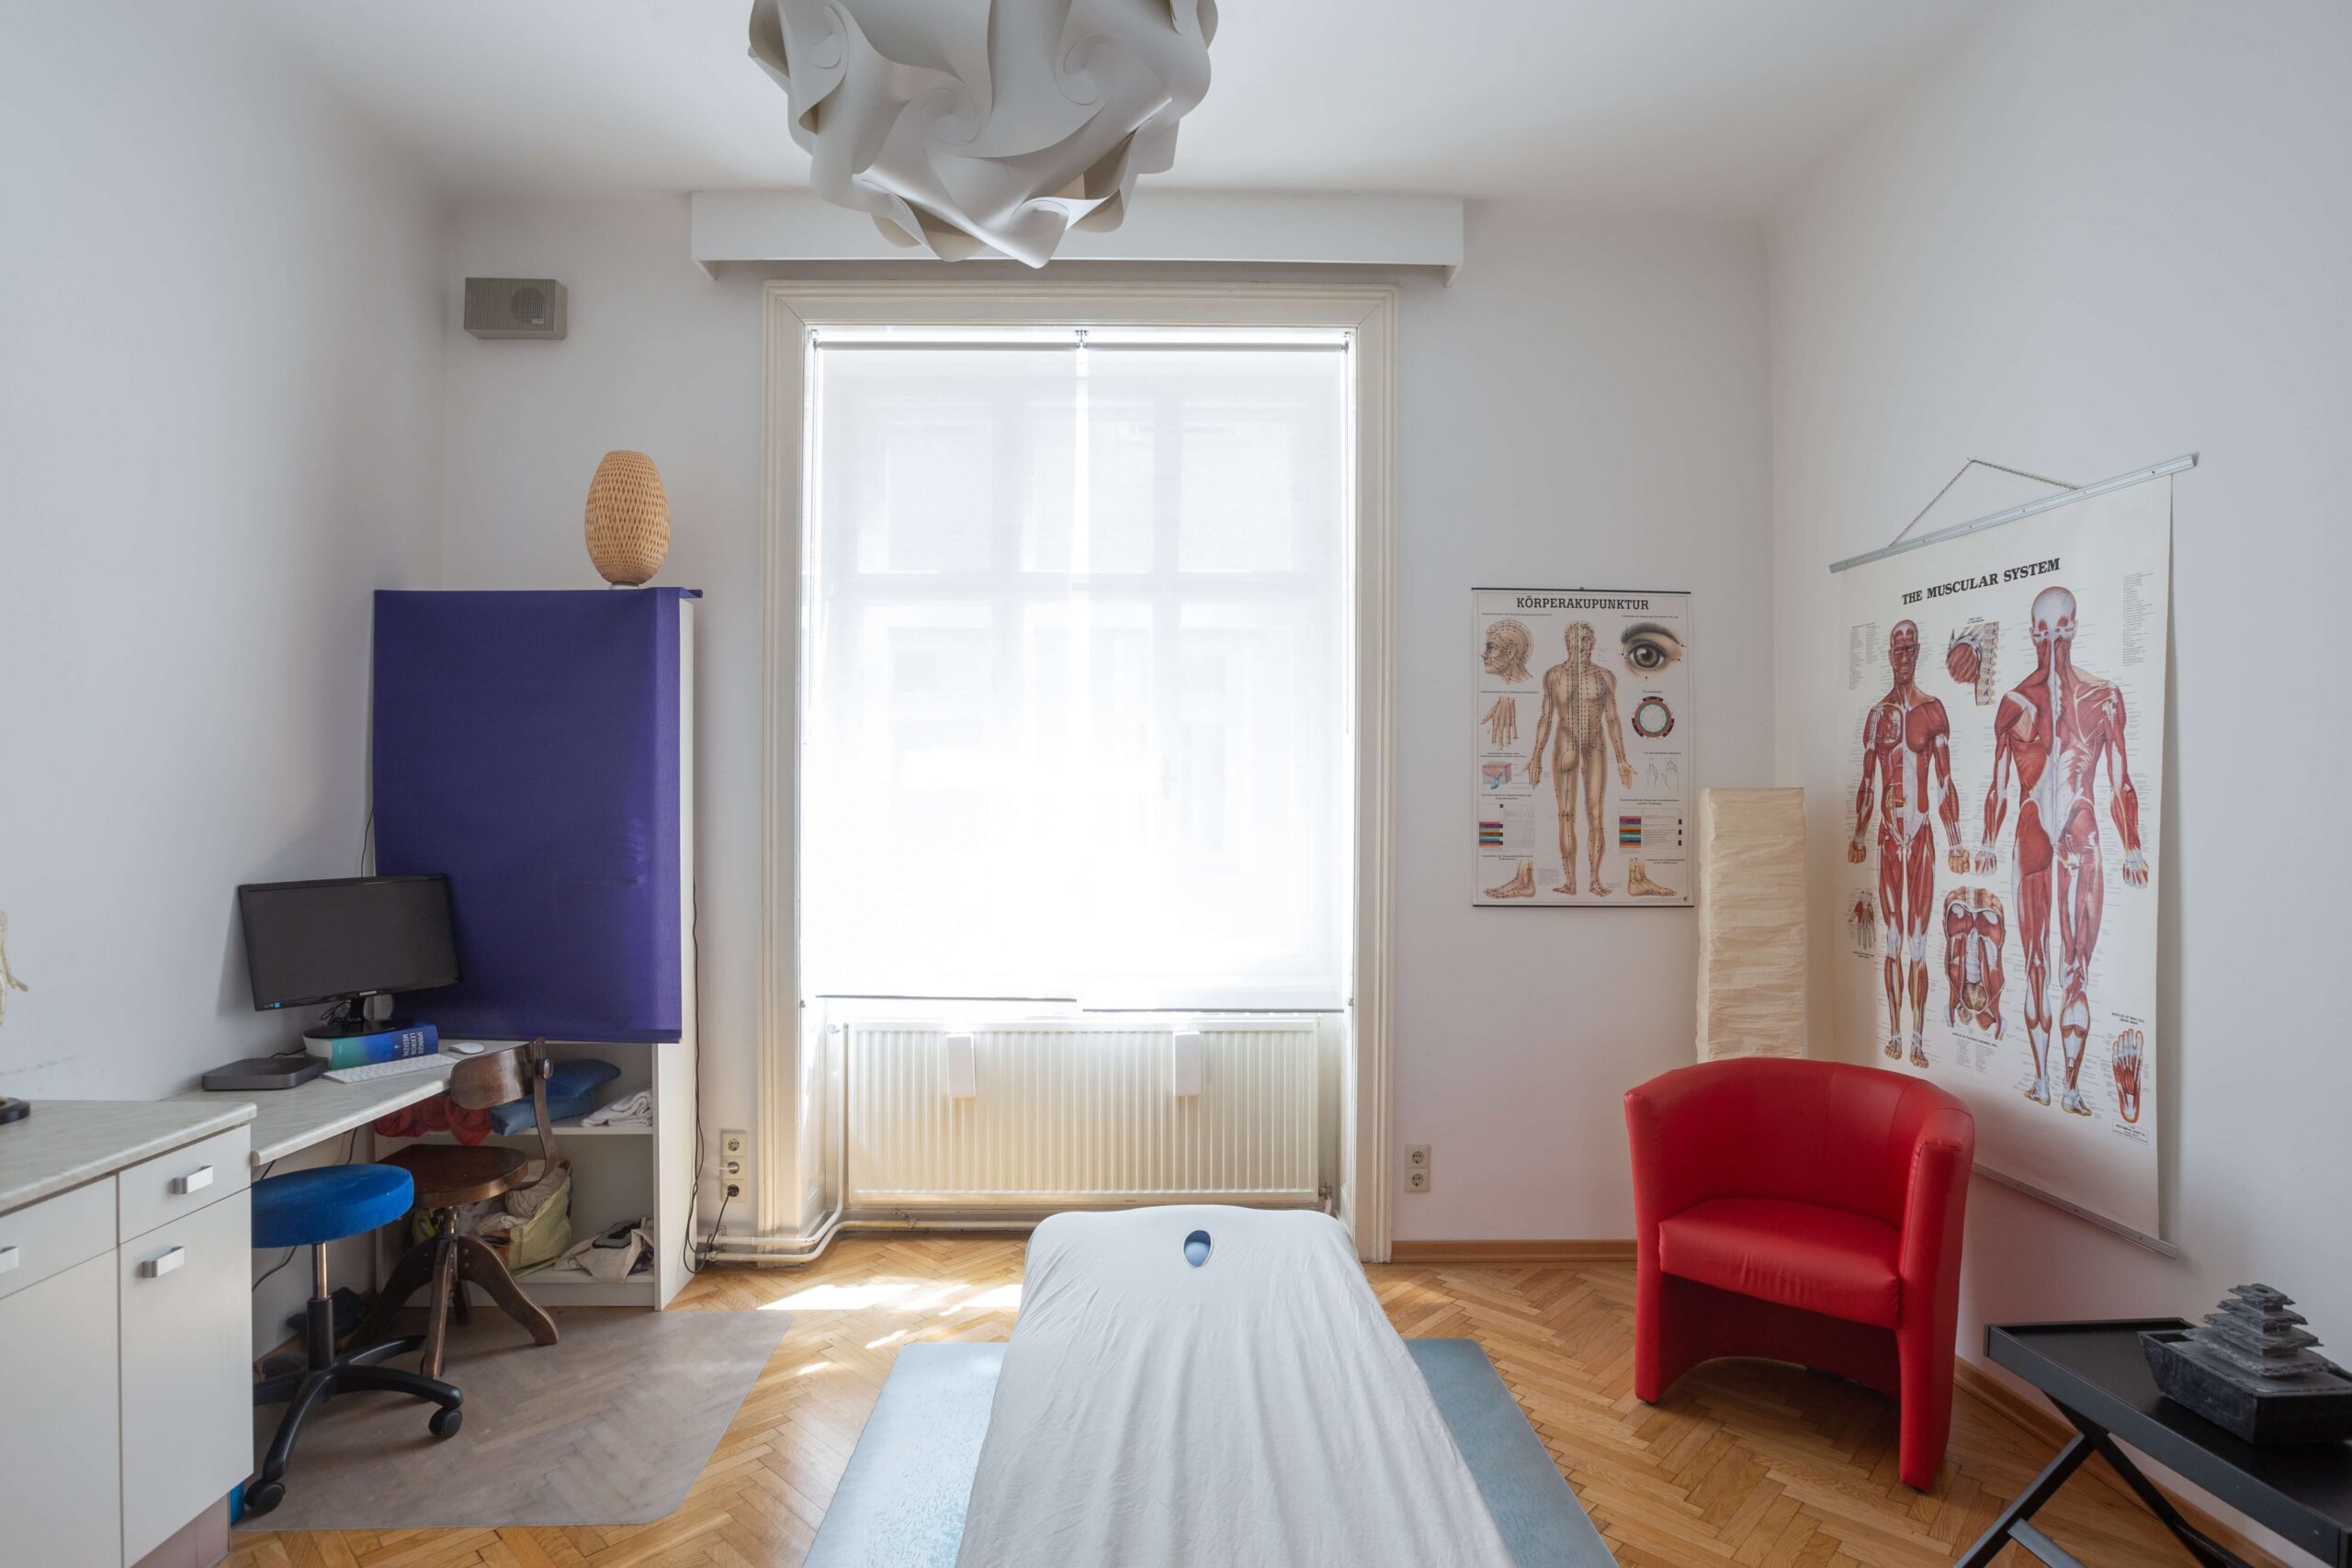 Modern eingerichtete Massage Praxis mit höhenverstellbarer Massageliege, Anatomie Bilder und Sonnenschein durch das Fenster